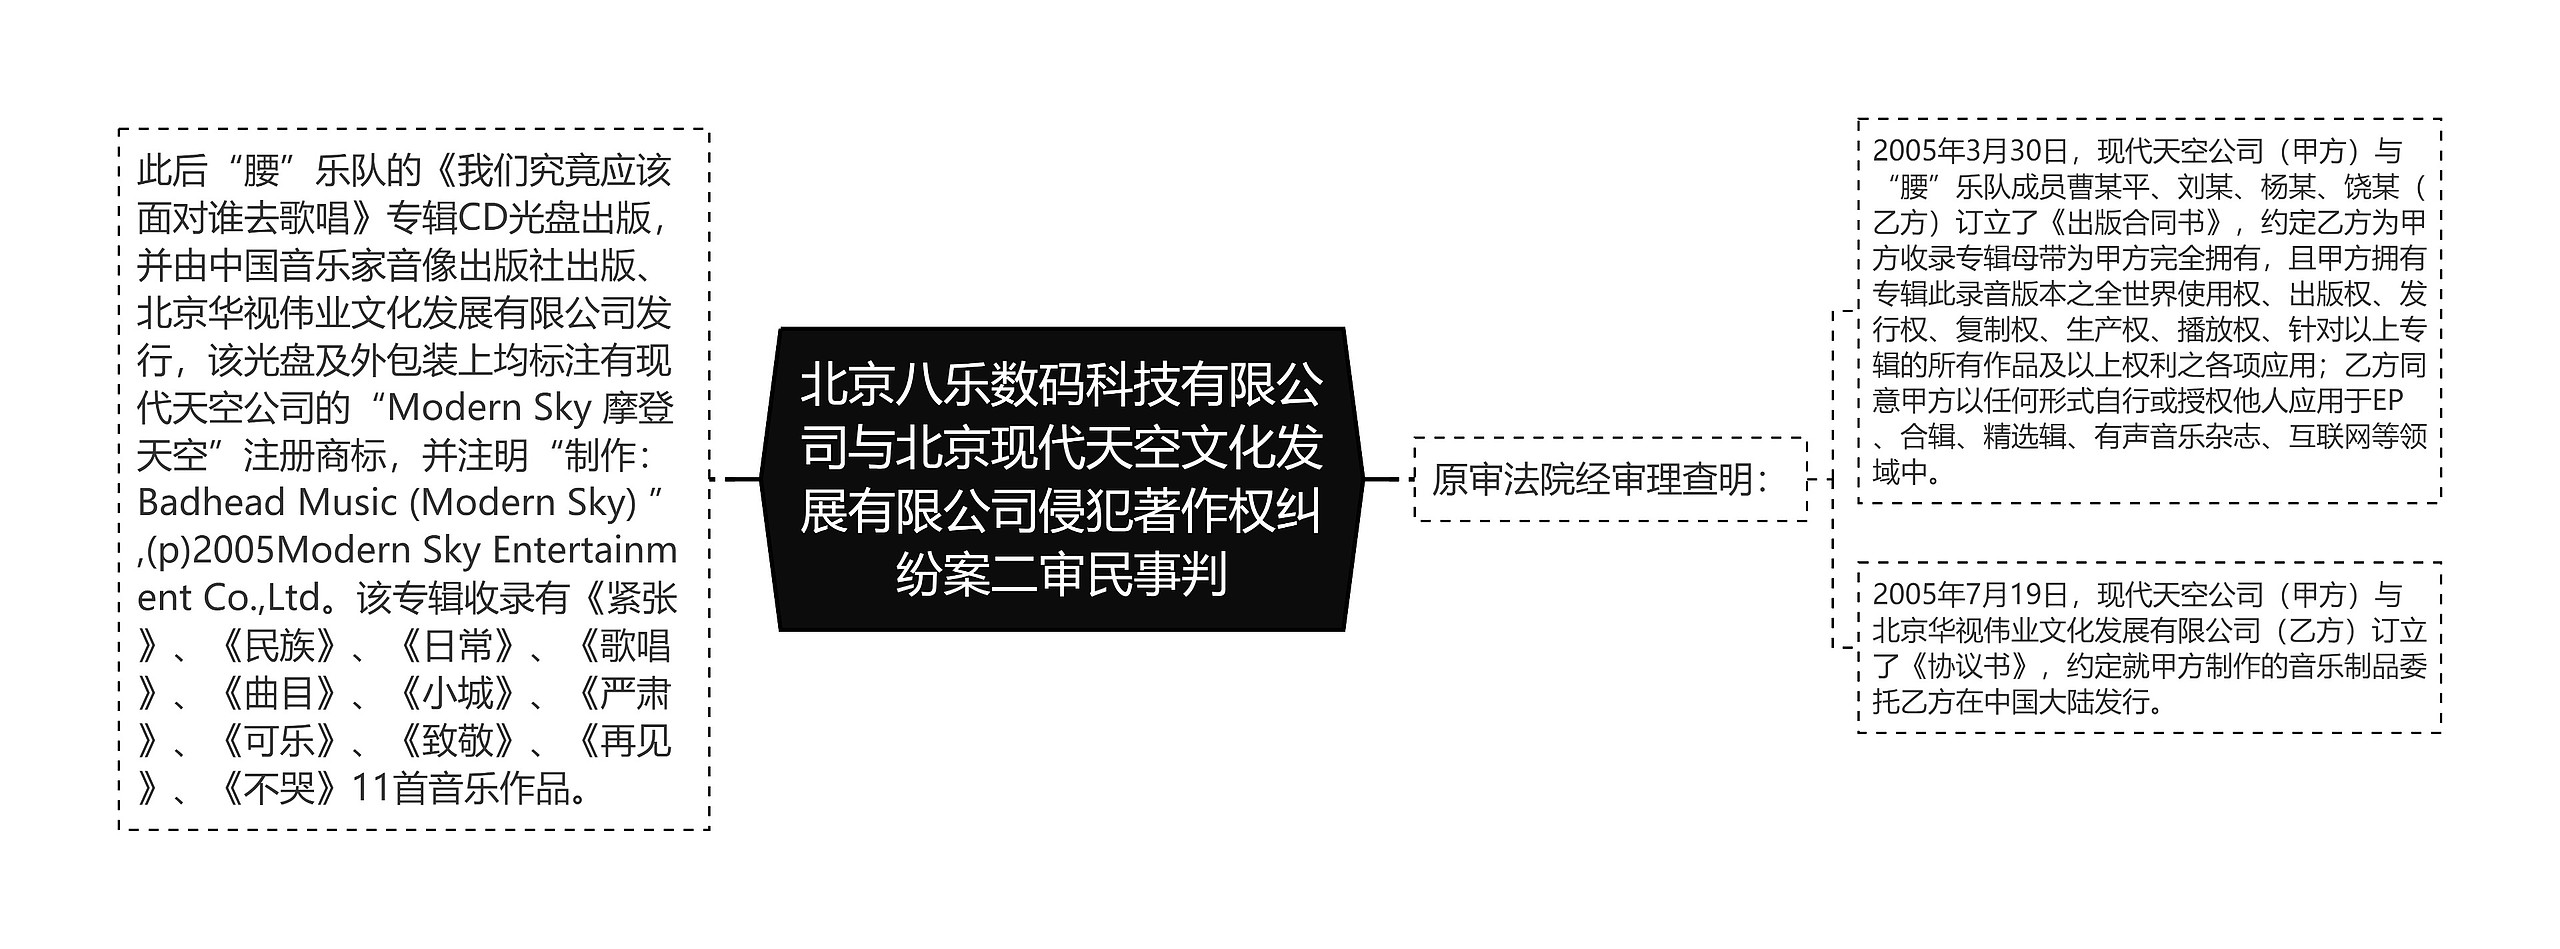 北京八乐数码科技有限公司与北京现代天空文化发展有限公司侵犯著作权纠纷案二审民事判